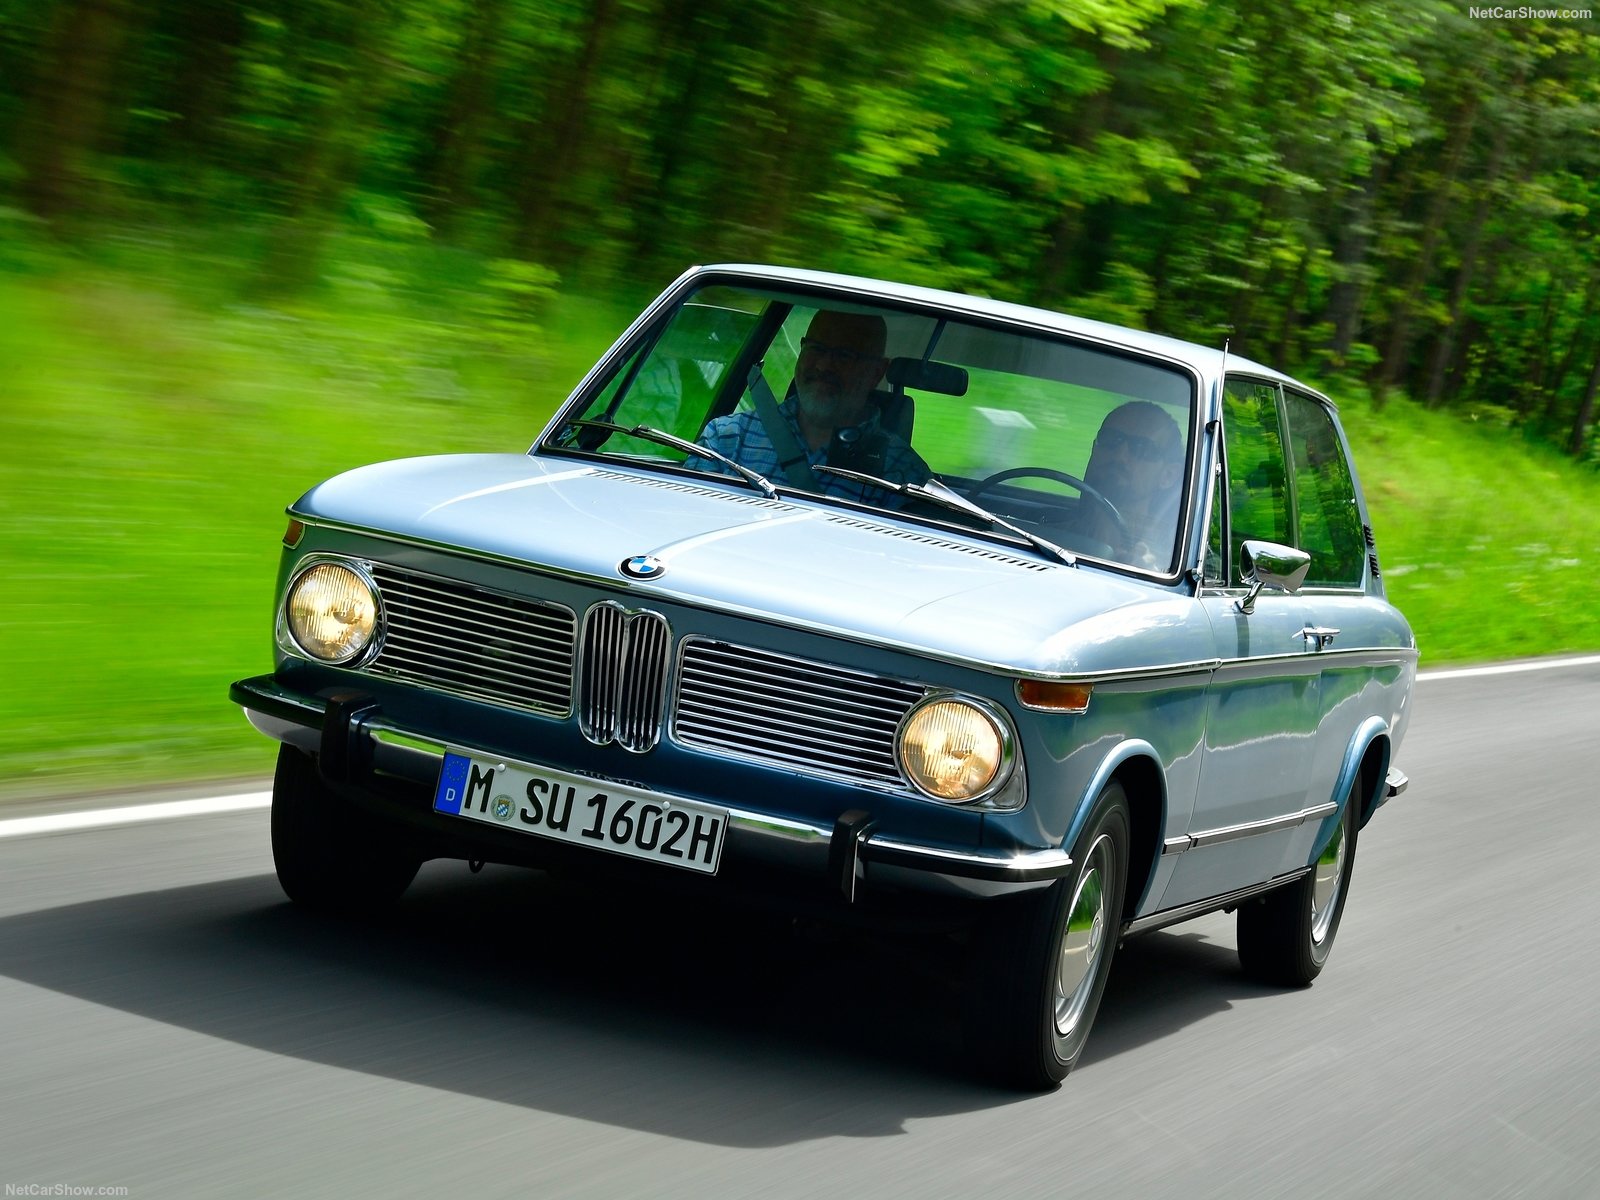 BMW 1802 Touring 1972 BMW-1802_Touring-1972-1600-0b